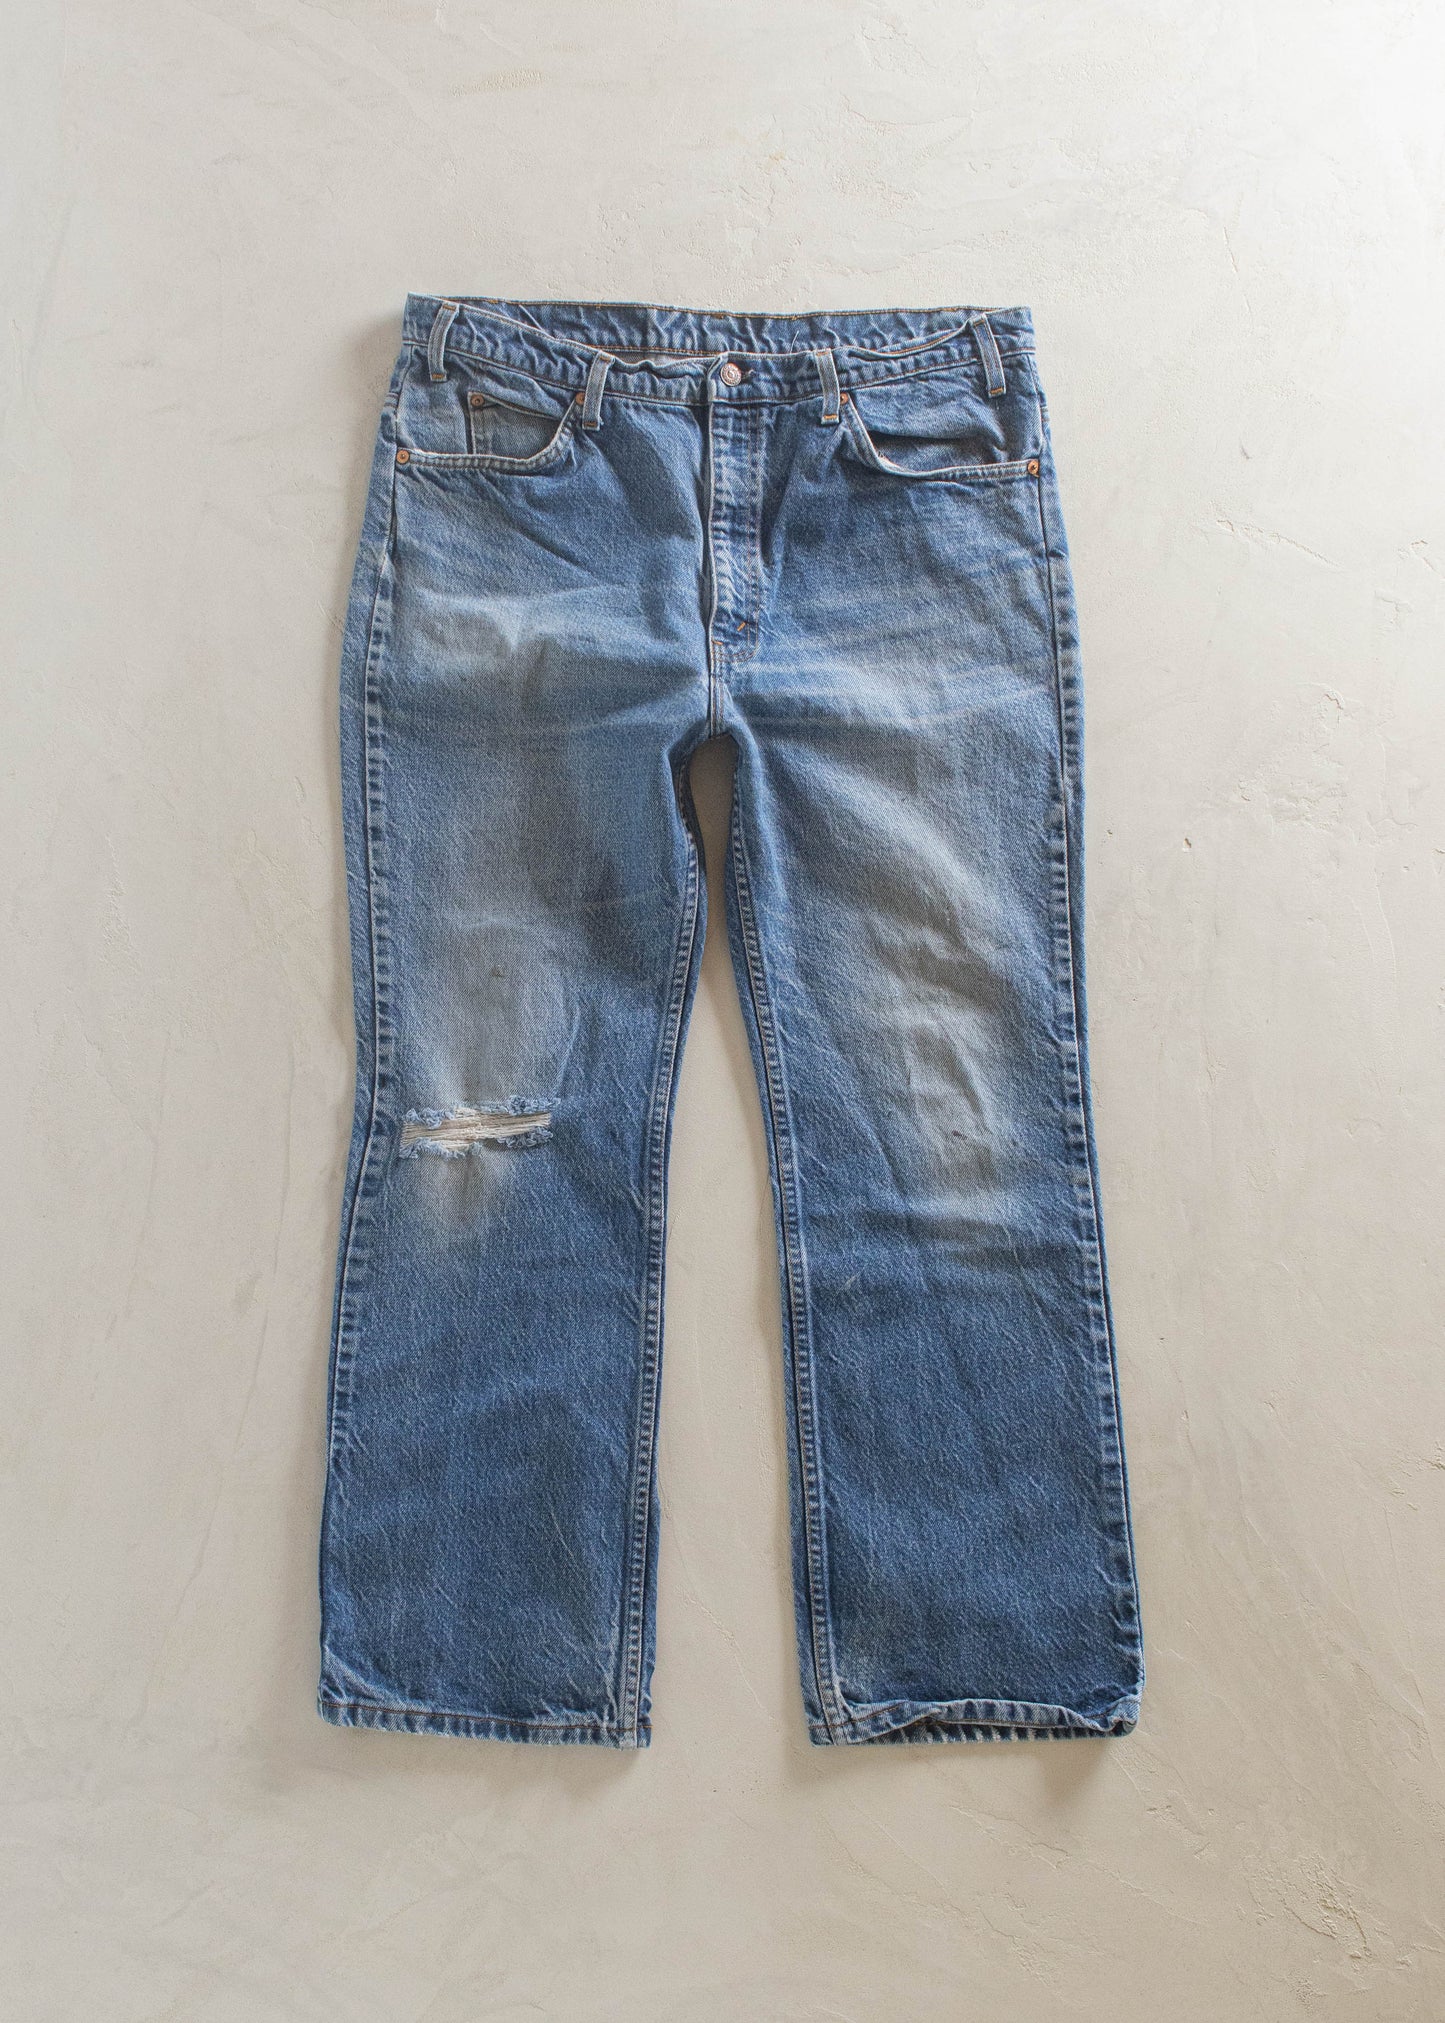 1980s Levi's 517 Midwash Jeans Size Women's 33 Men's 36